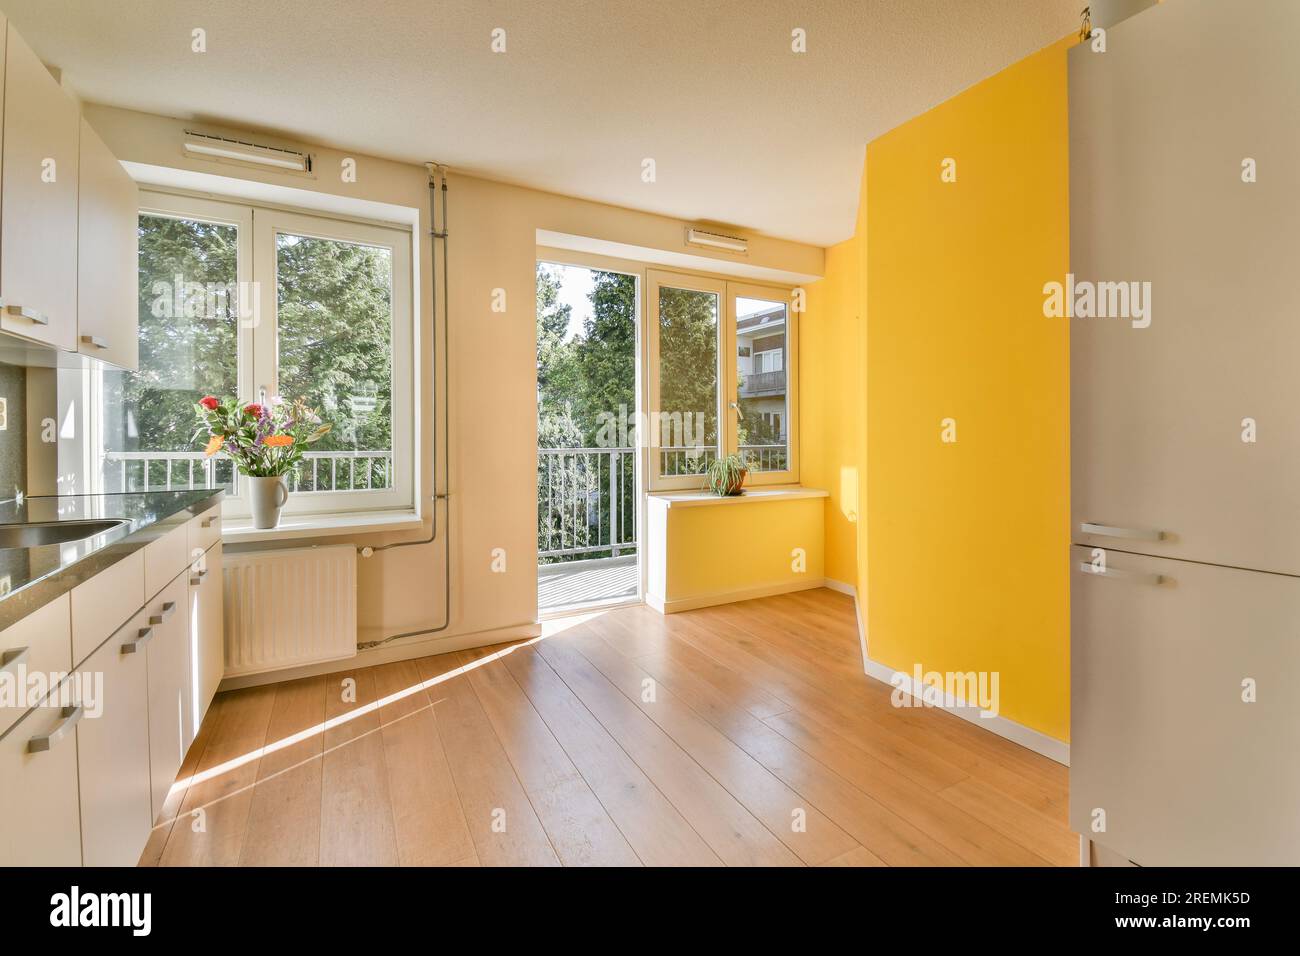 Eine Küche mit gelben Wänden und Holzfußboden in der Mitte des Zimmers, es gibt eine offene Tür, die zu einem führt Stockfoto